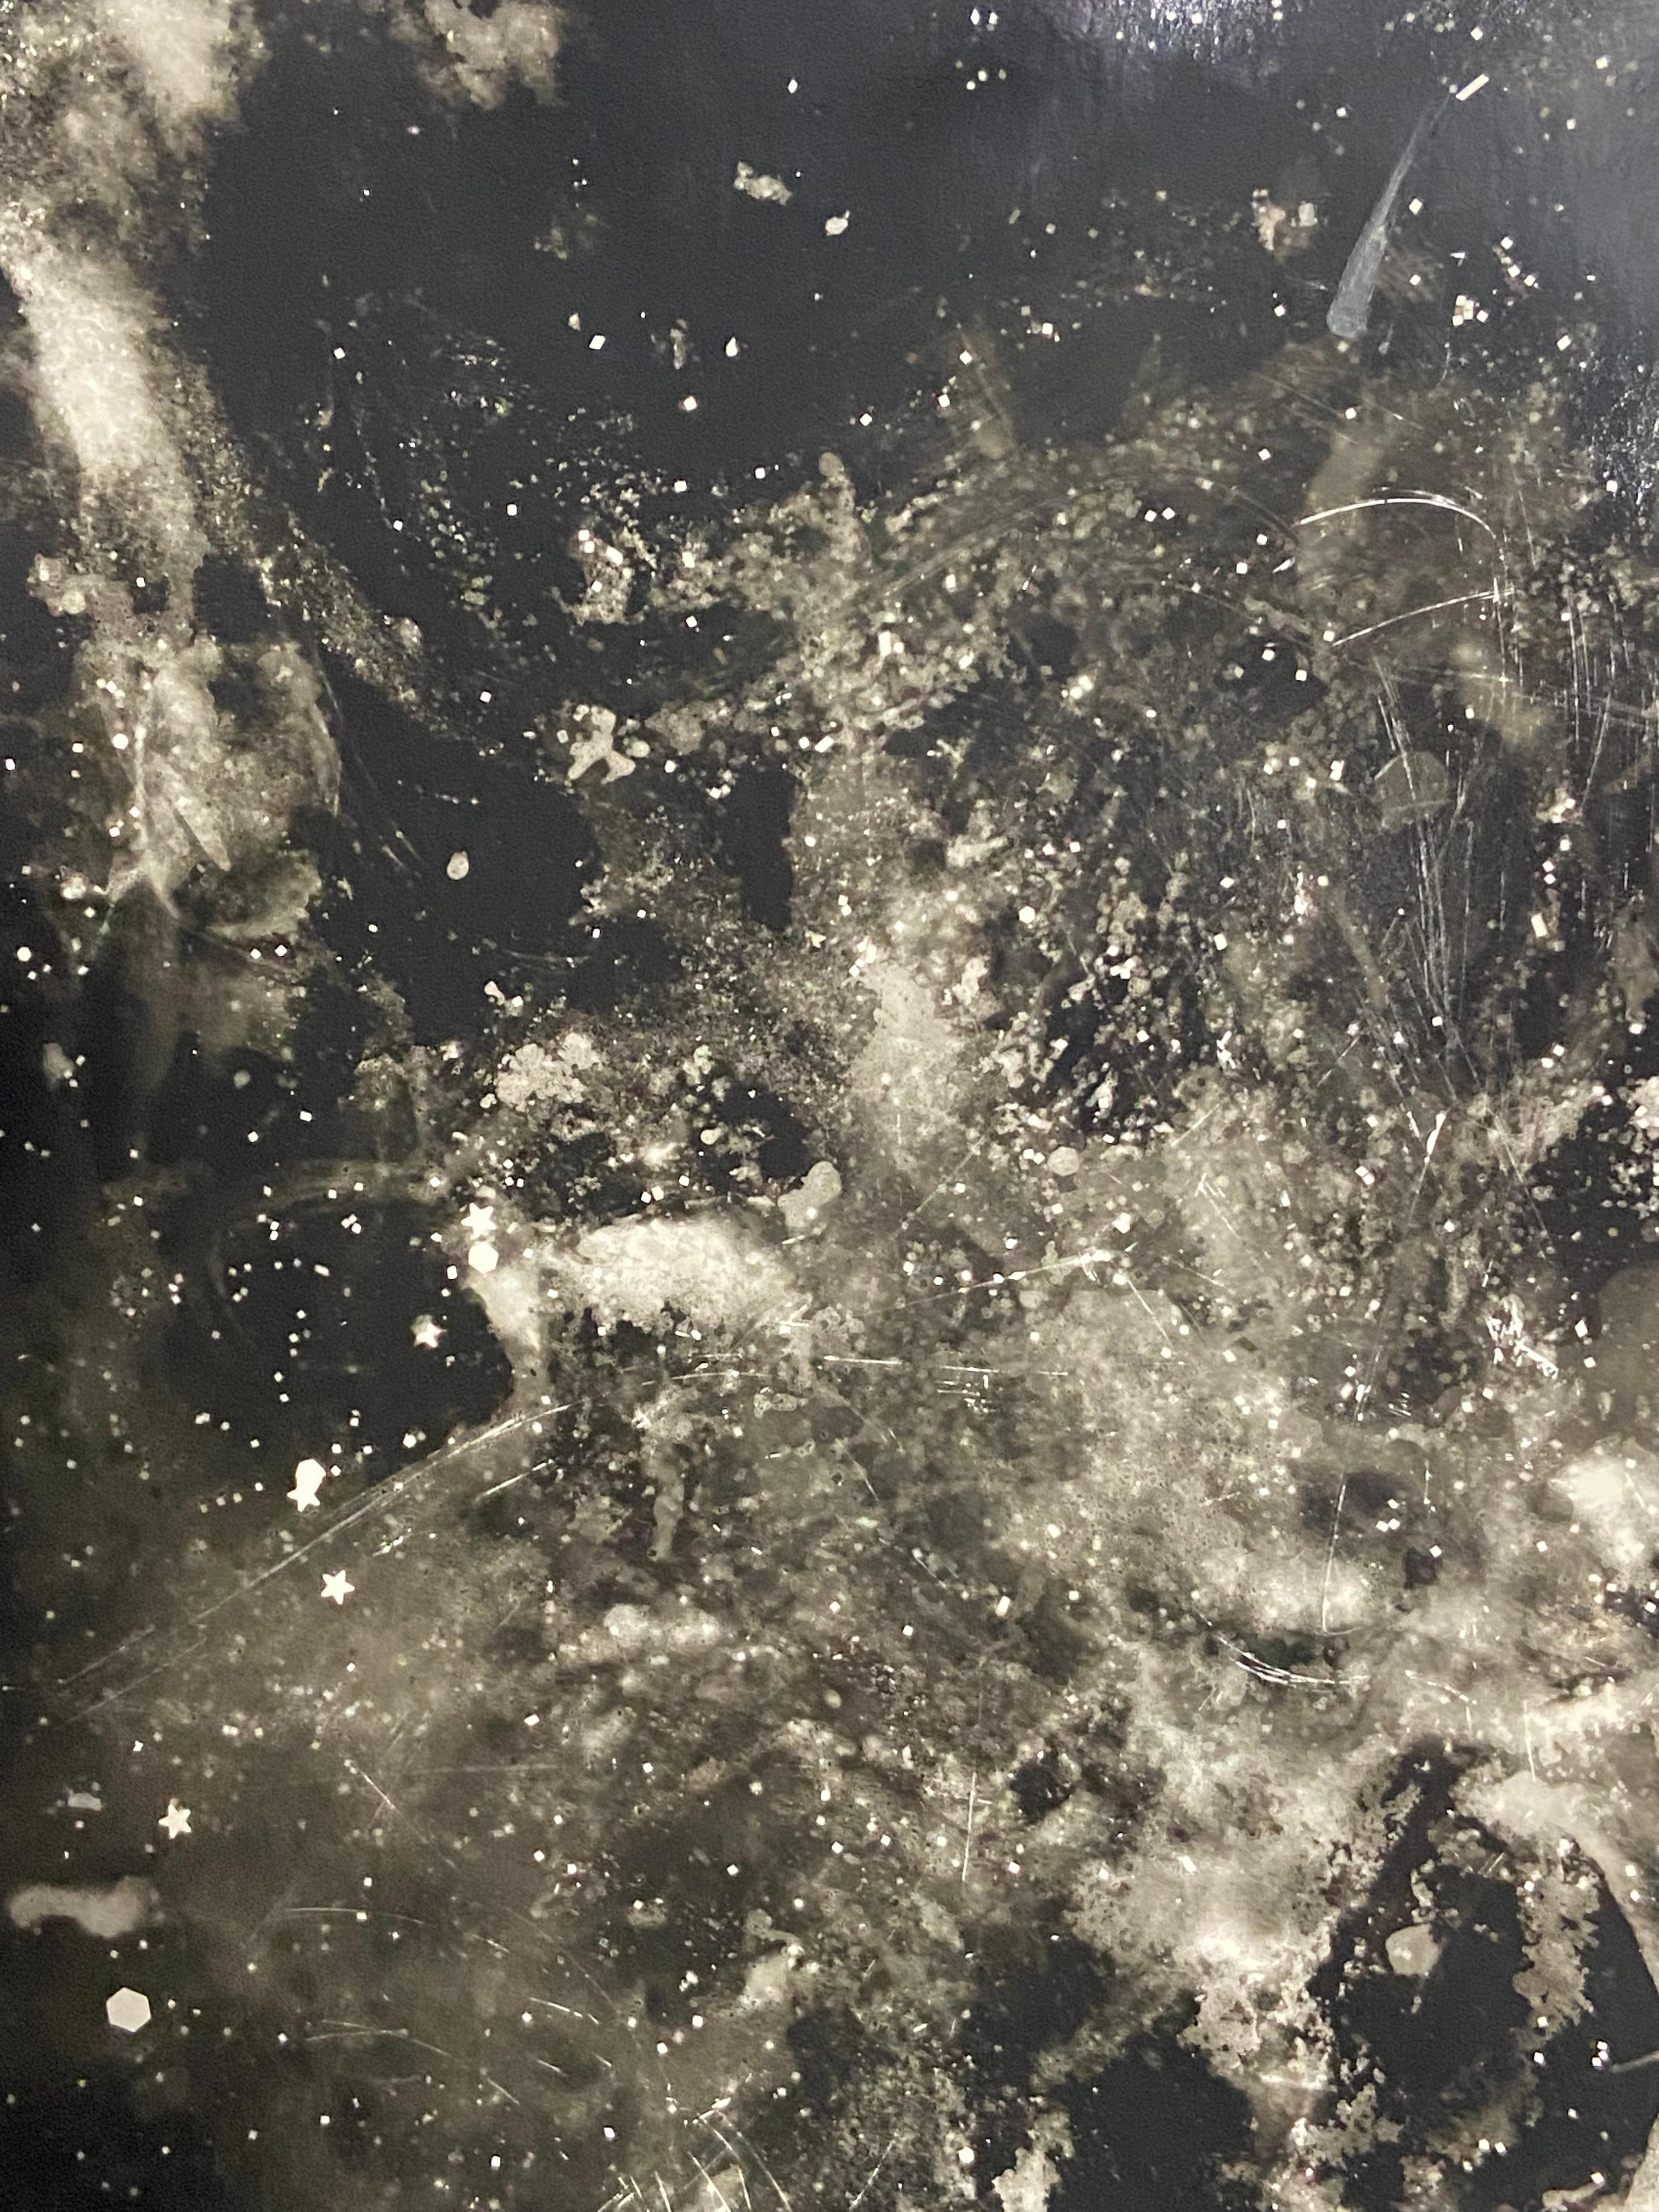 Starry Night - photogramme abstrait et contemporain unique de gélatine argentique au procédé altéré - Photograph de Kimberly Schneider Photography